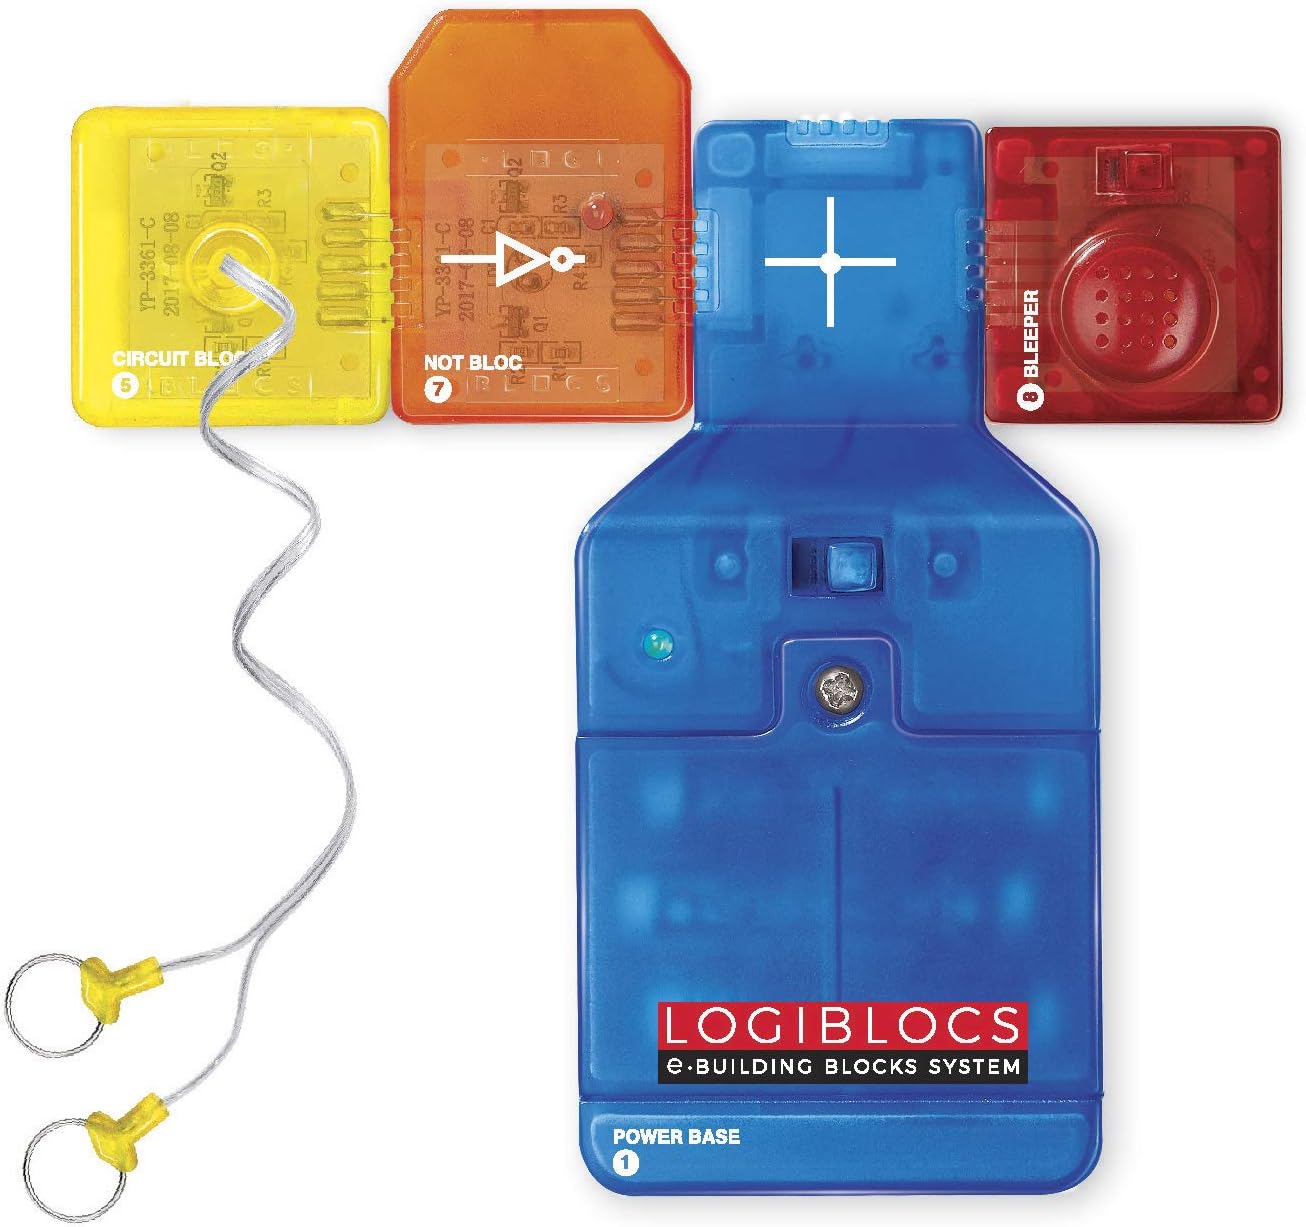 LogiBlocs: Smart Circuts